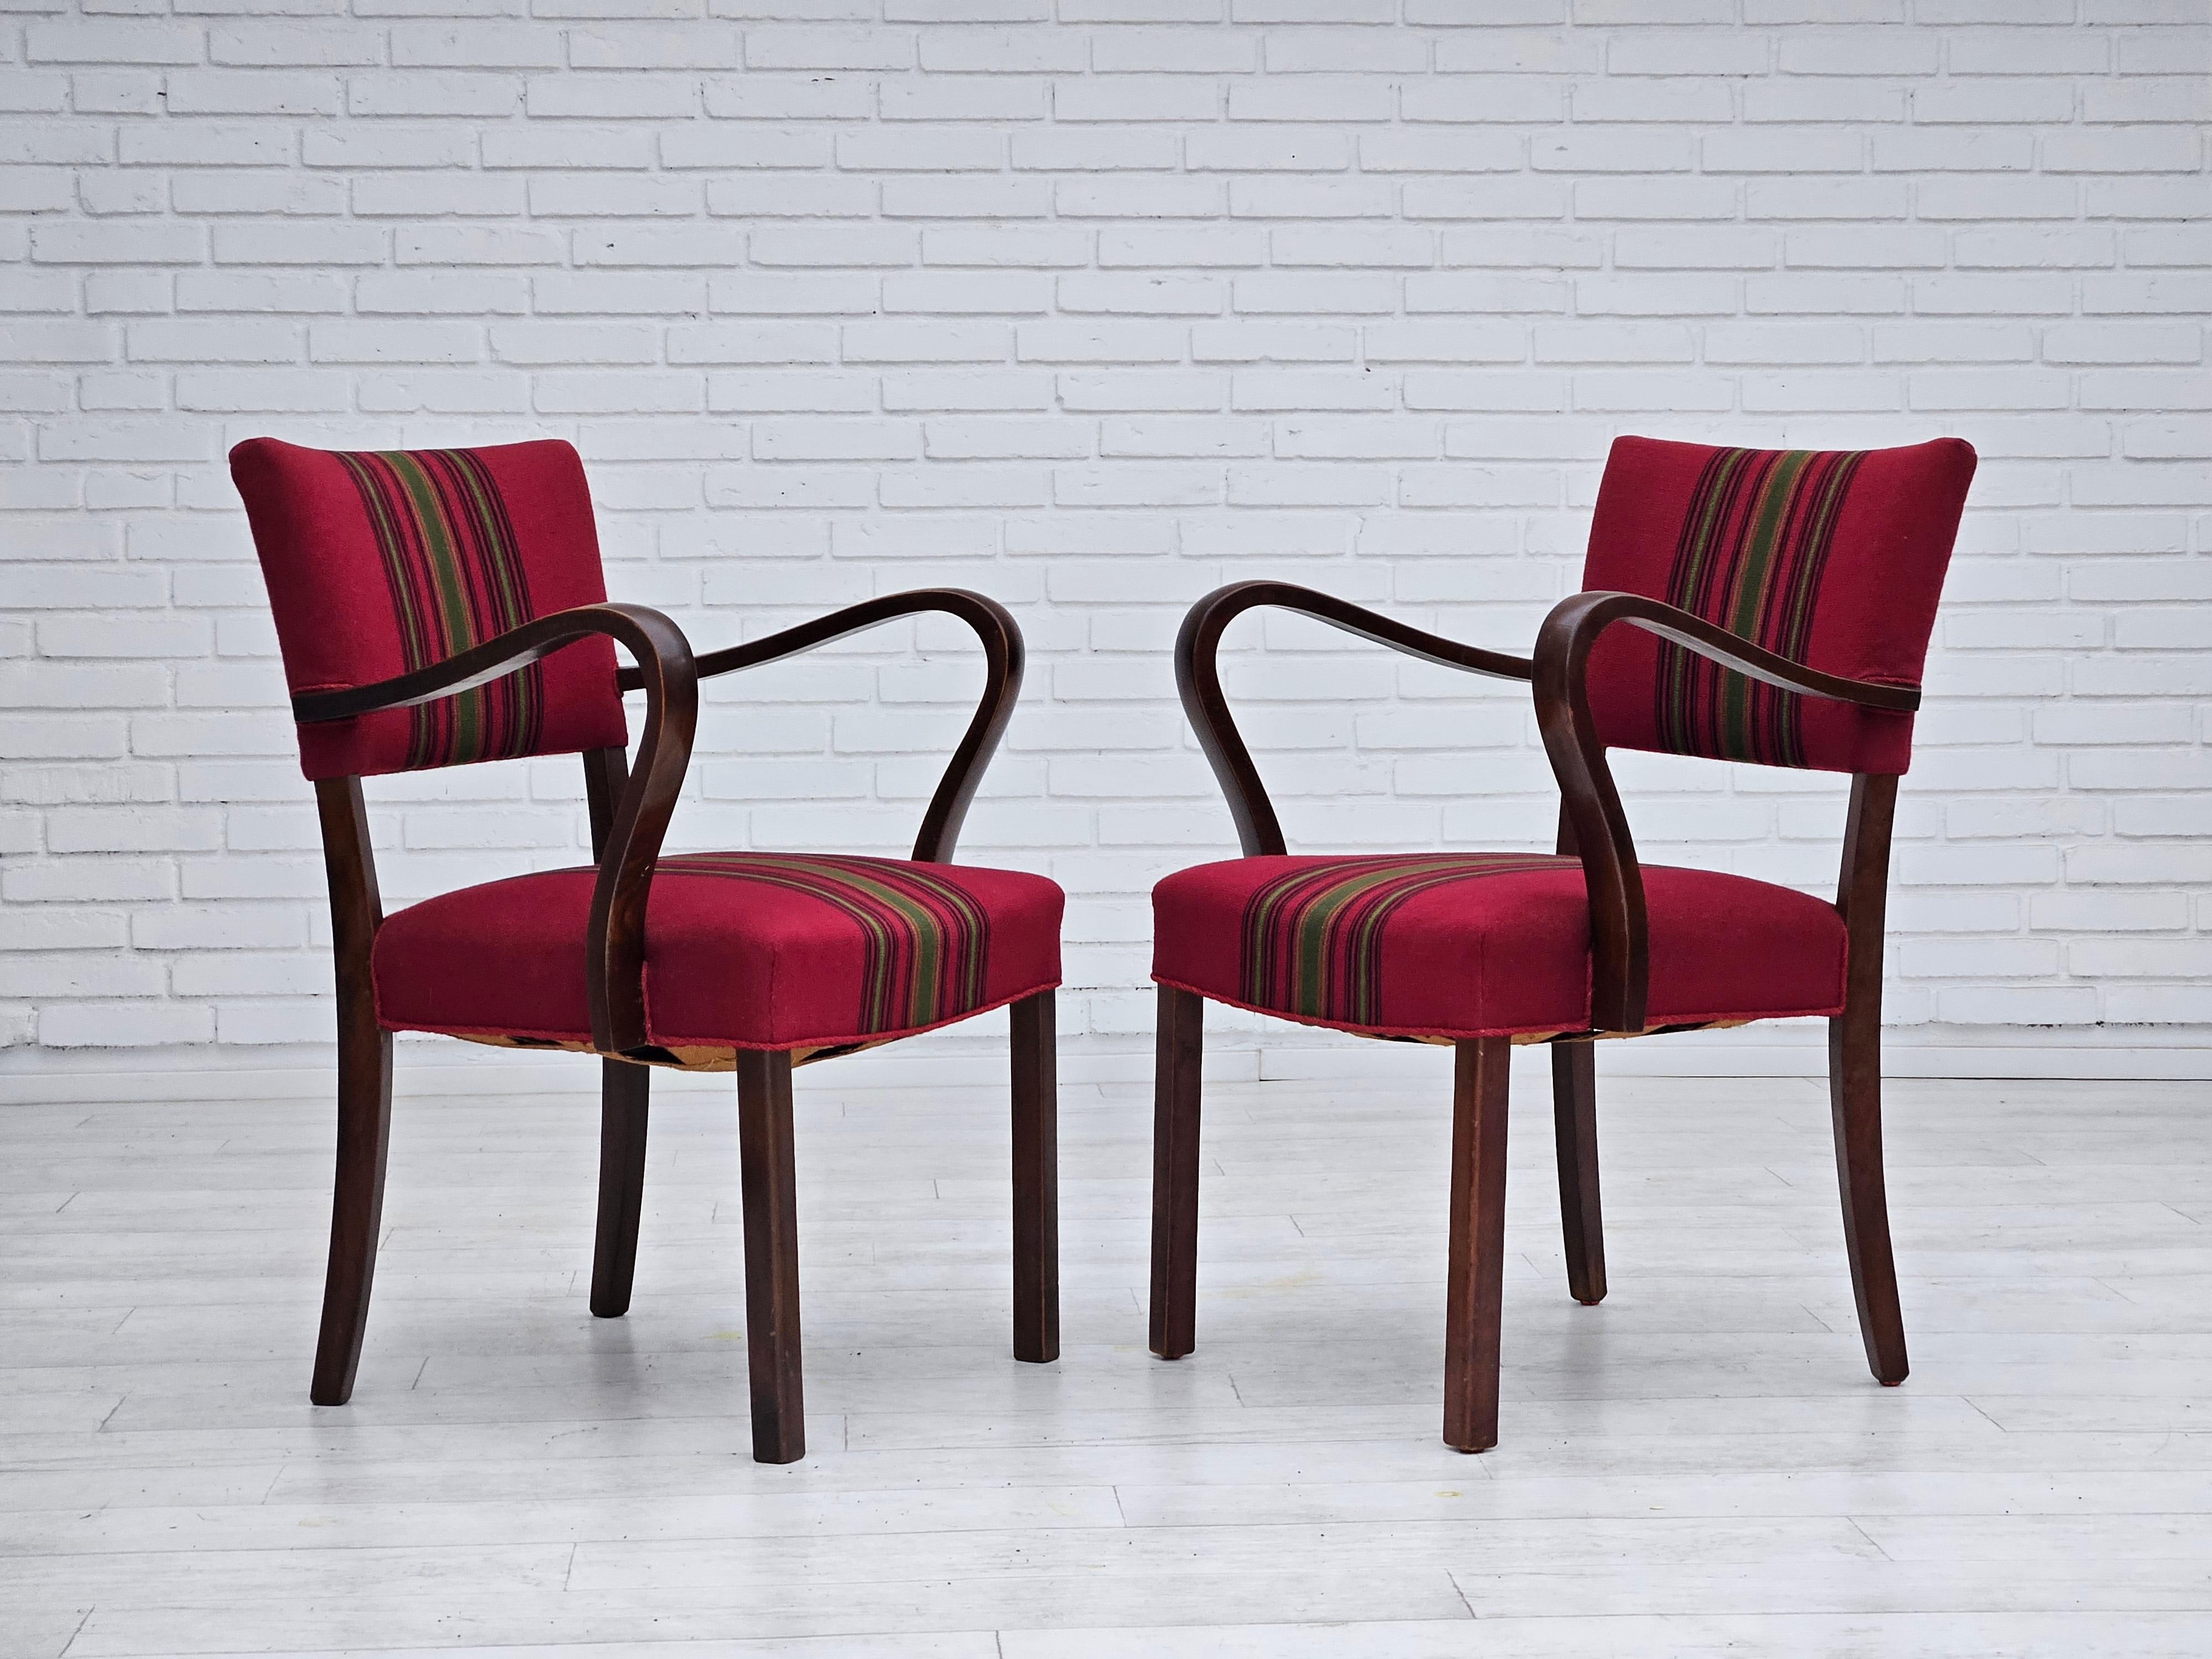 Années 1950, paire de fauteuils danois. Très bon état d'origine : pas d'odeurs ni de taches. Bois de frêne, tissu de laine d'ameublement, ressorts en laiton dans l'assise. Fabriqué par un fabricant de meubles danois dans les années 1955.